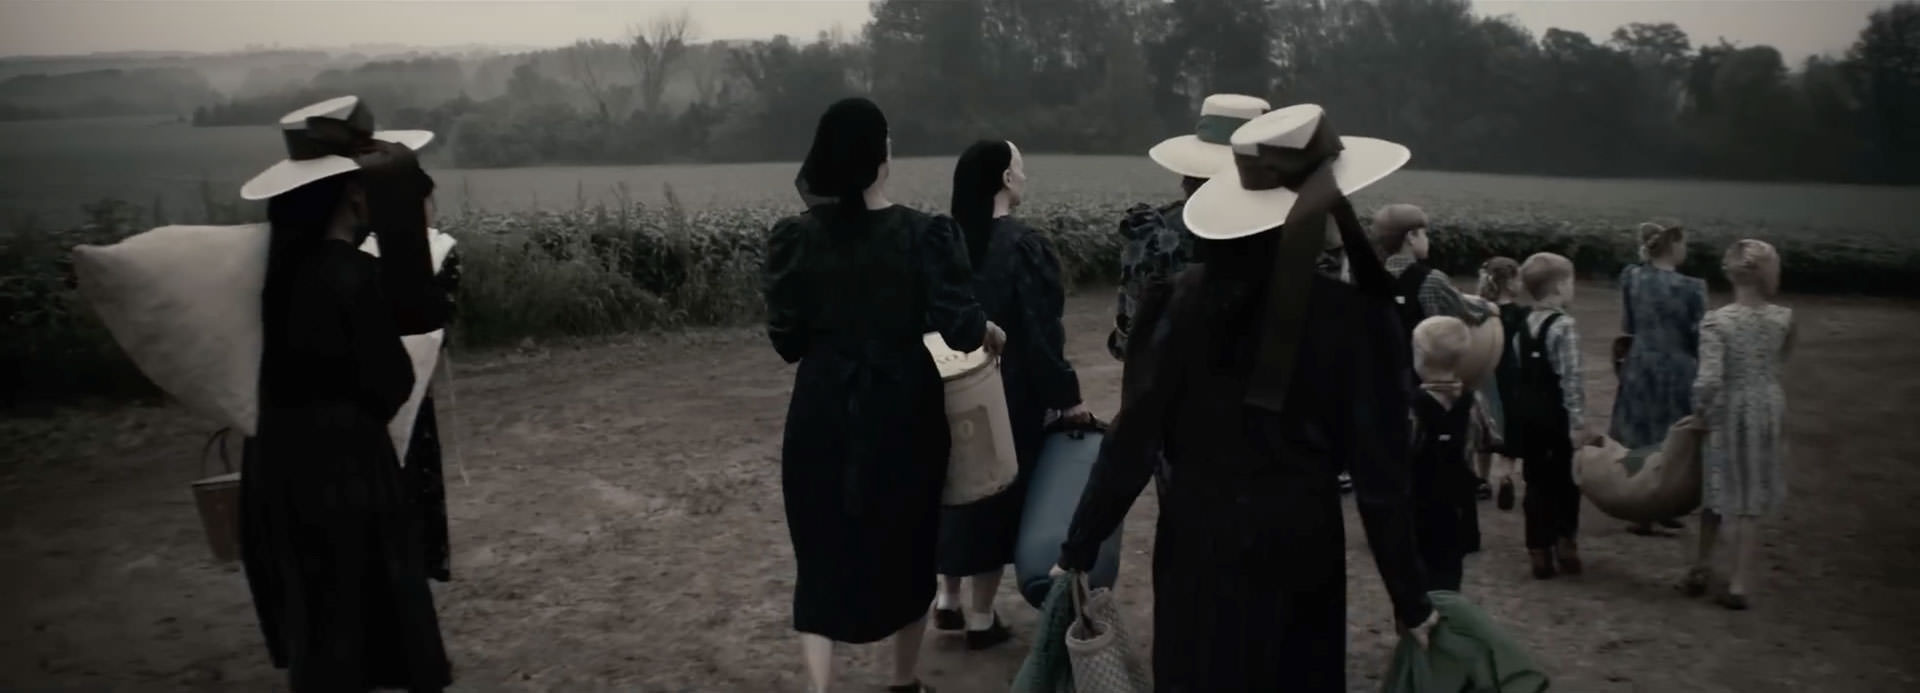 گروهی از زنان تیره‌پوش در حال راه‌رفتن داخل یک مزرعه در نمایی از فیلم حرف زدن زنان به کارگردانی سارا پلی